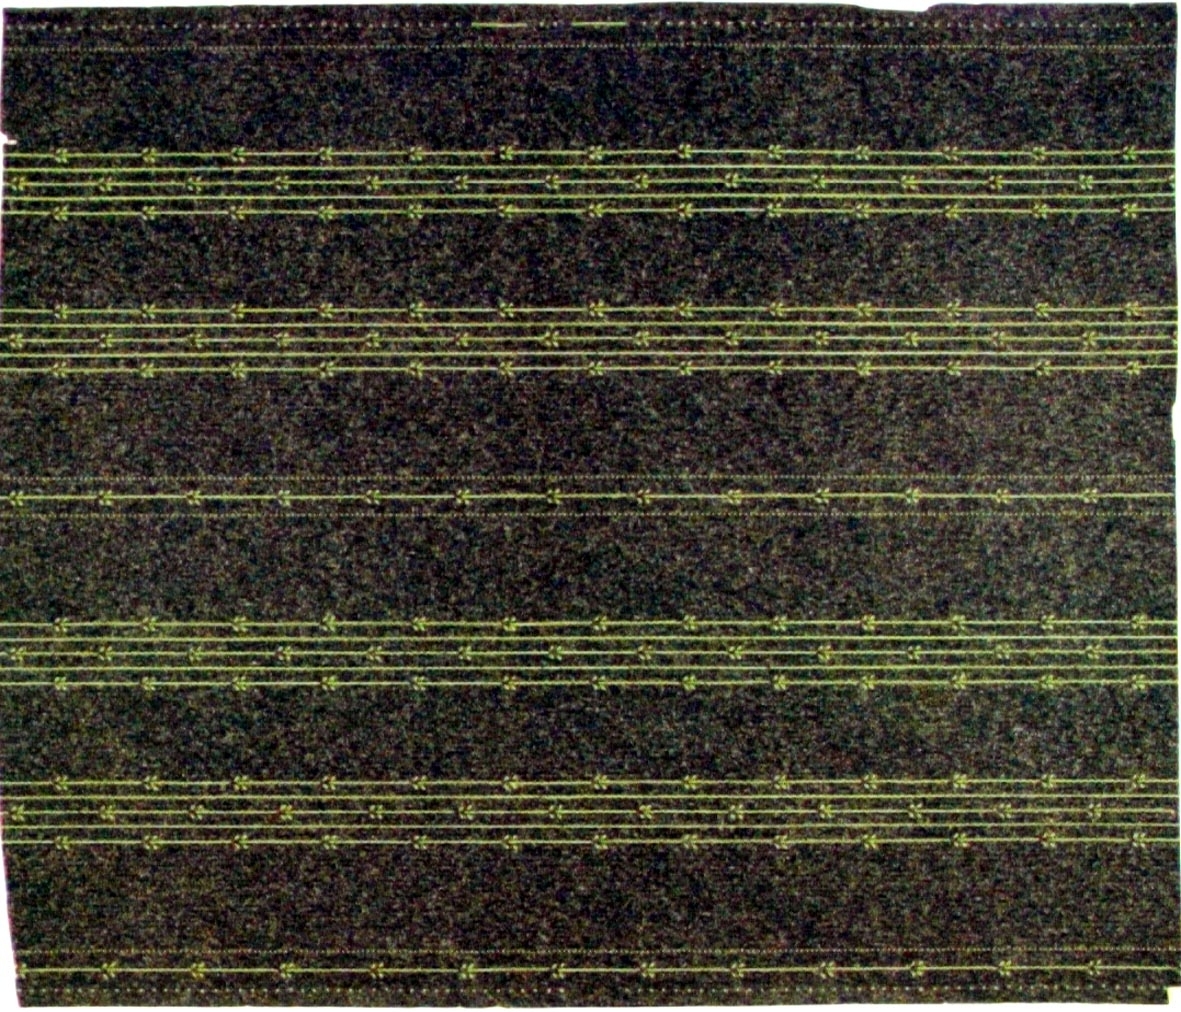 Randmönster bestående av återkommande partier med stiliserade lodräta små bladrankor i gulgrönt på en mörkgrön bakgrund belagd med sågspån.